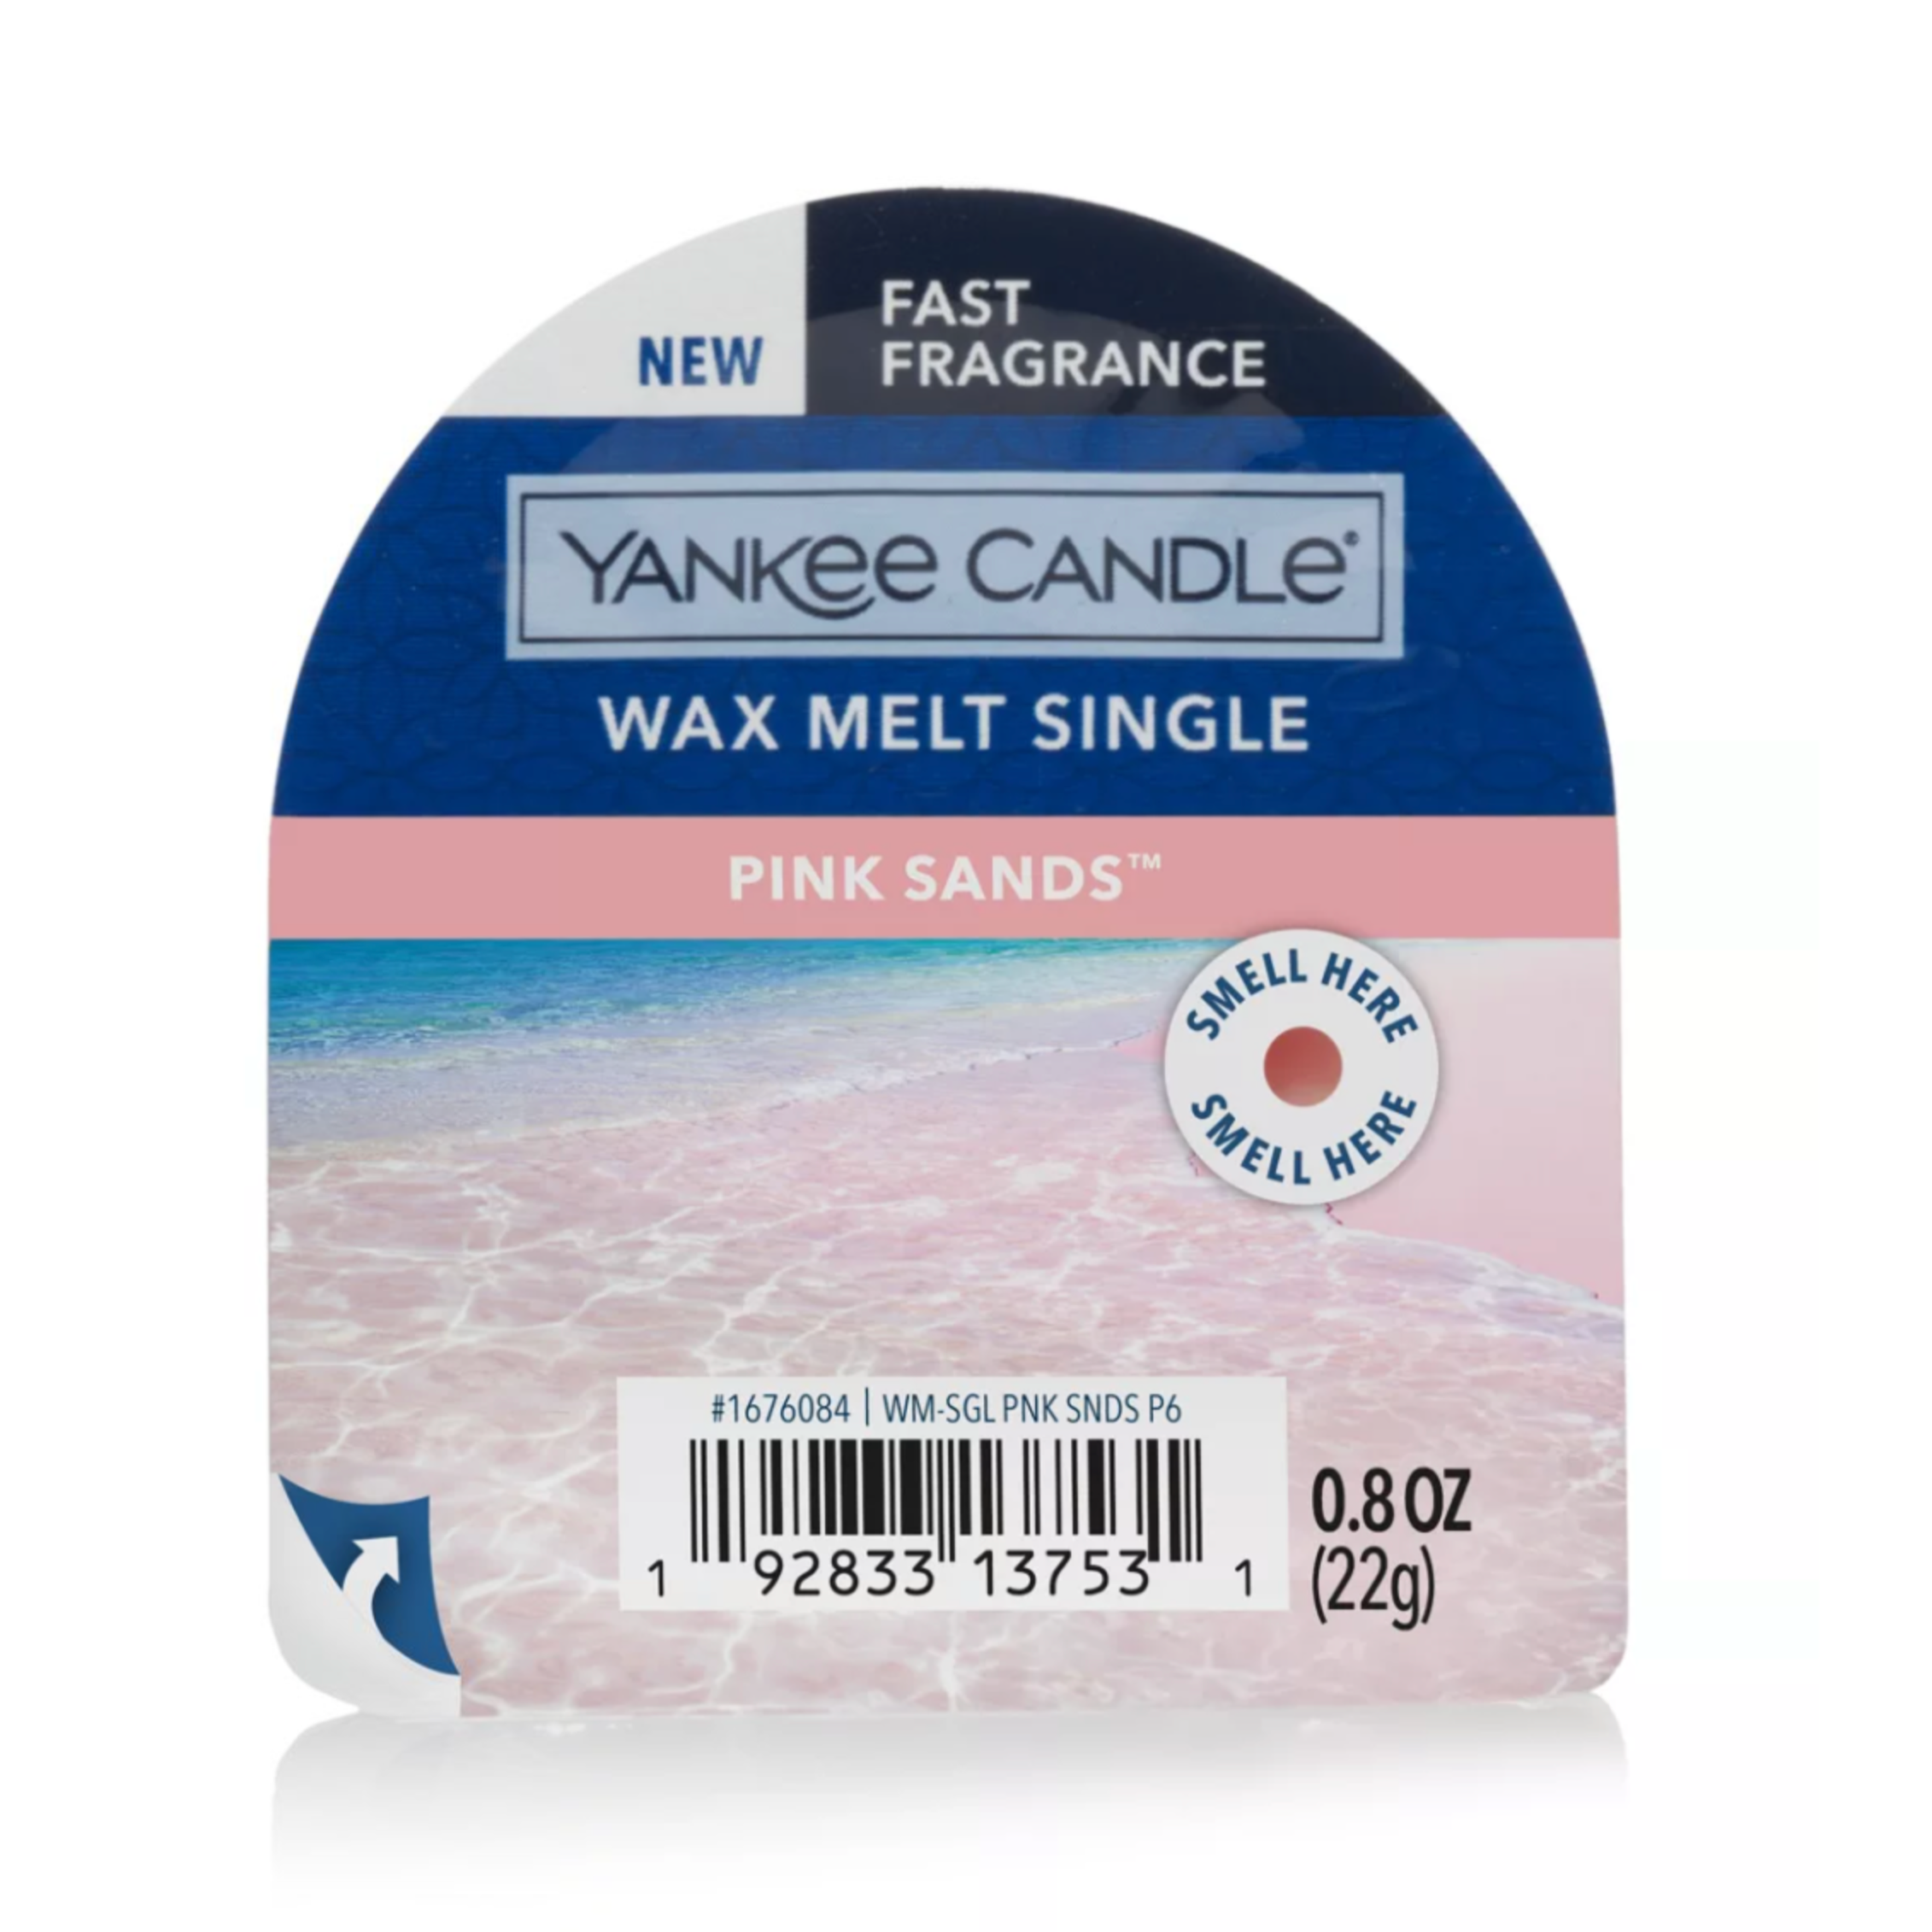 Pink Sands Wax Melt Single